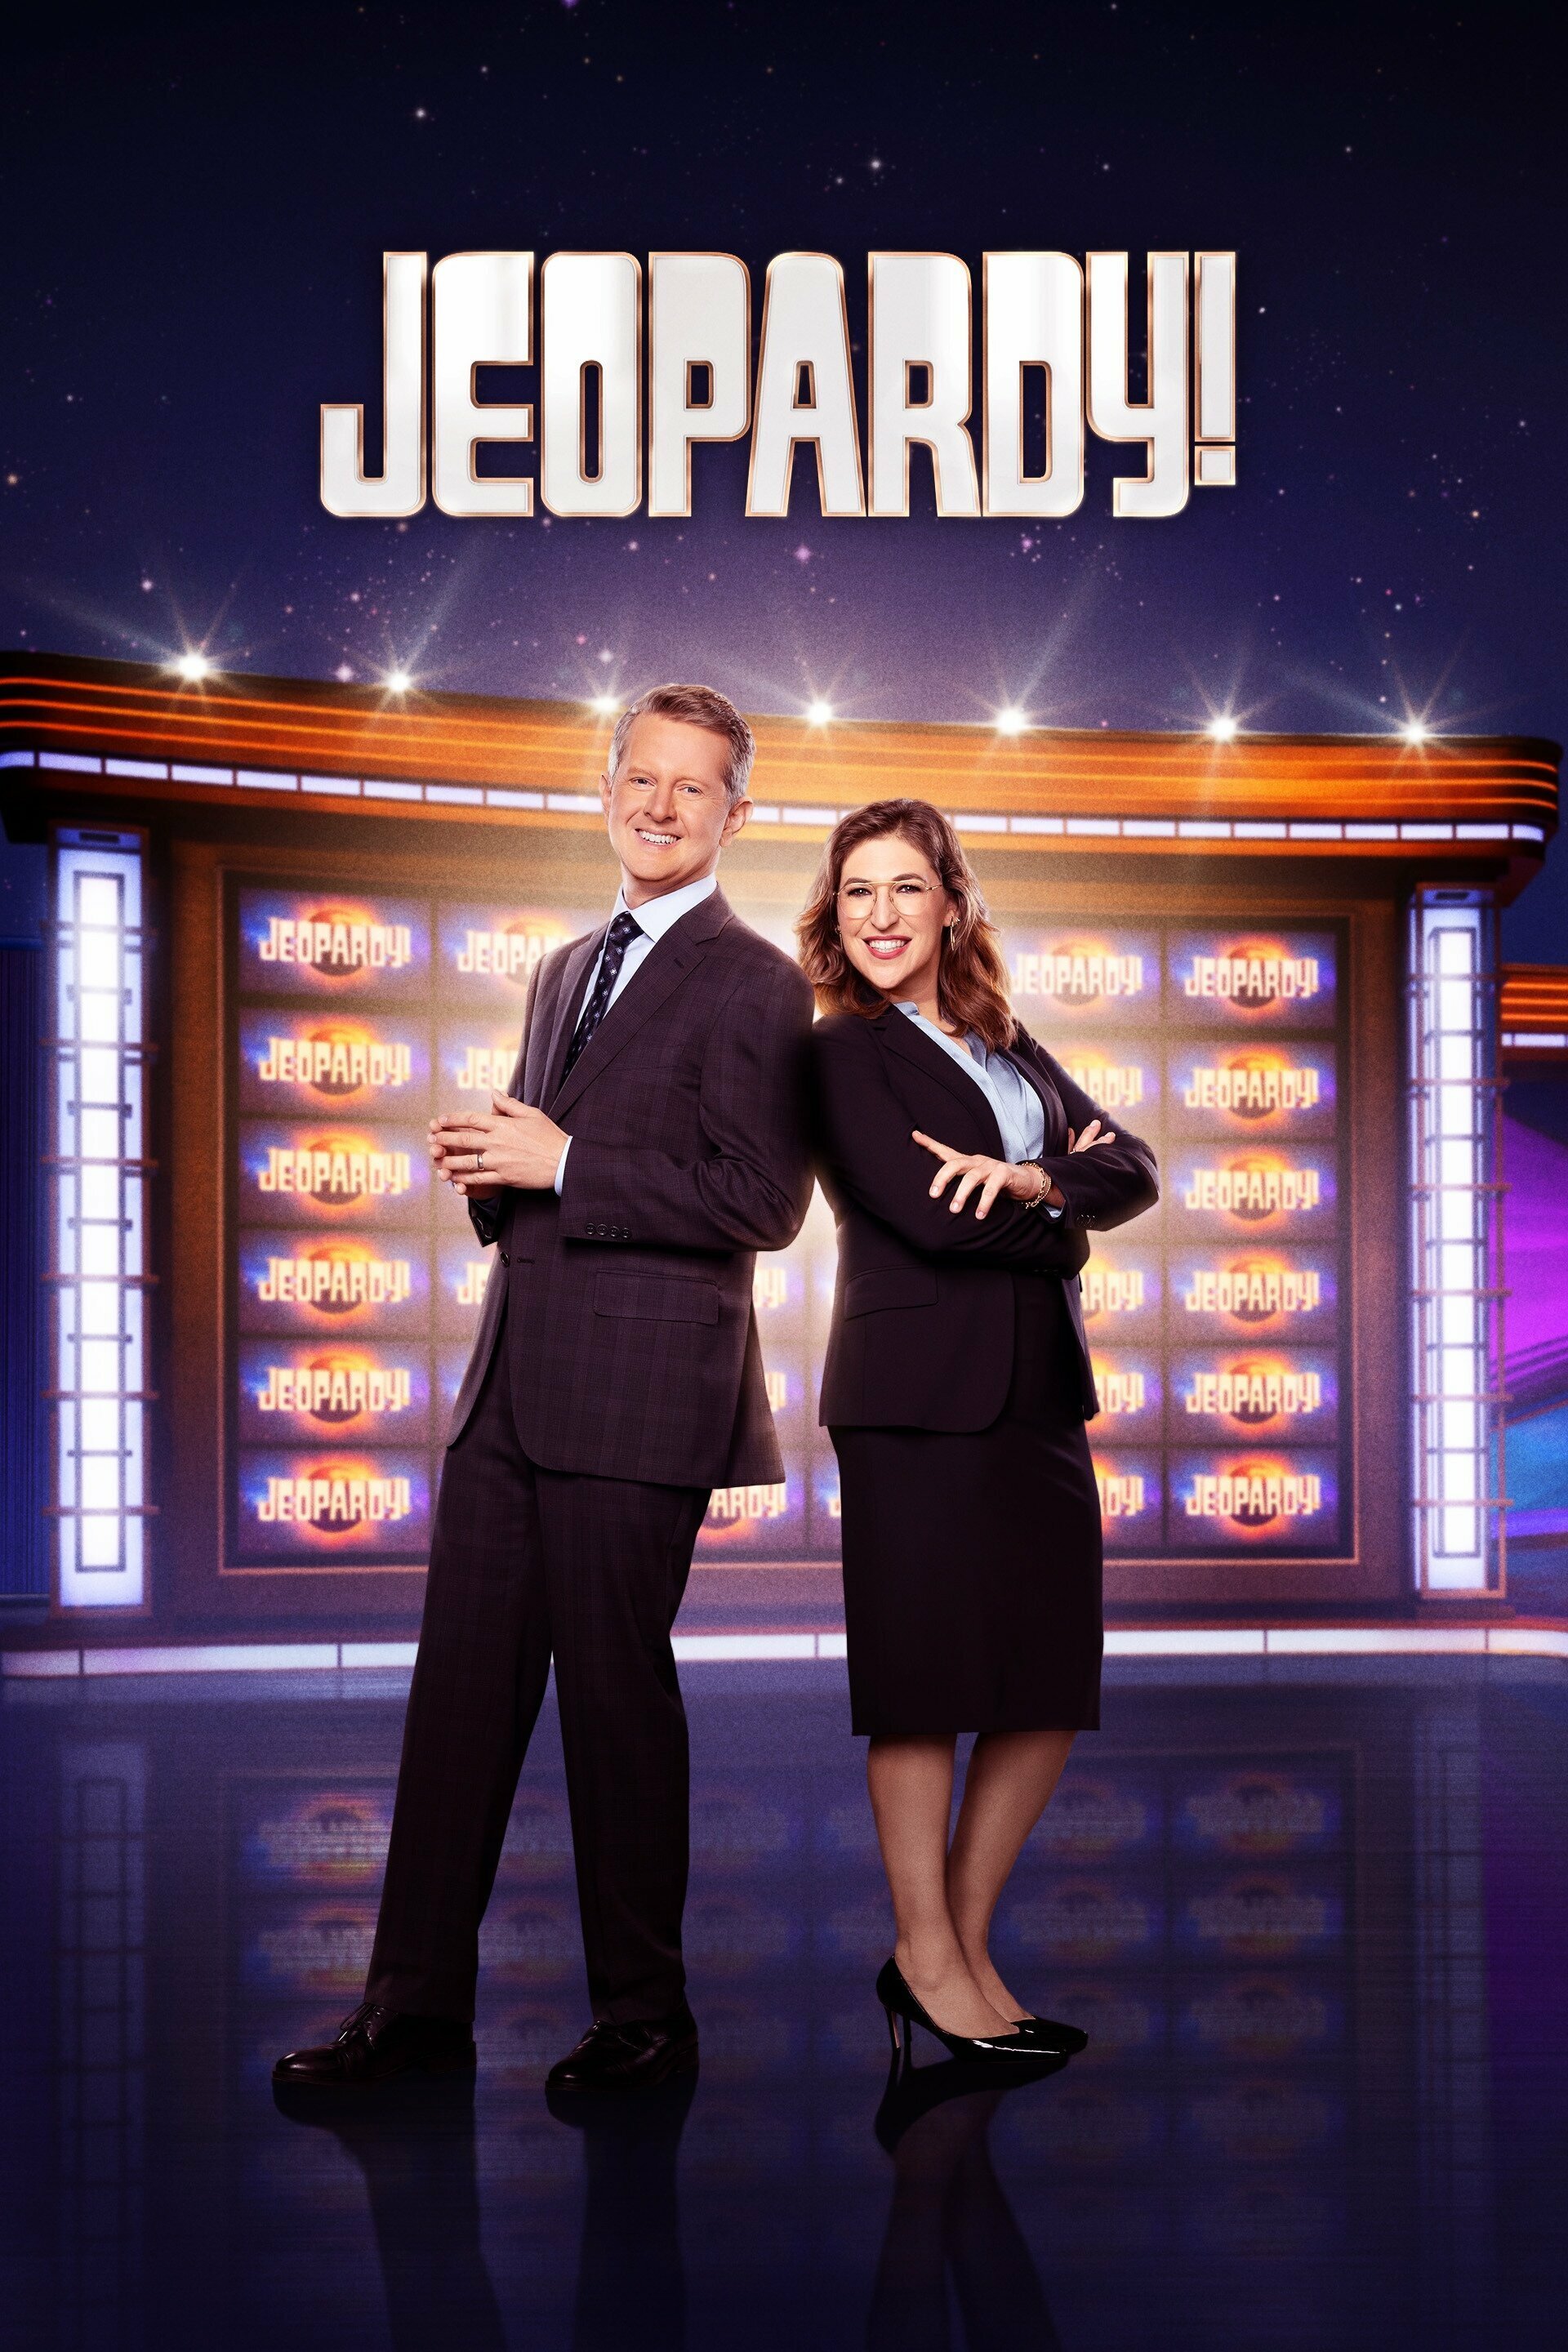 Jeopardy! TVShowSeeker